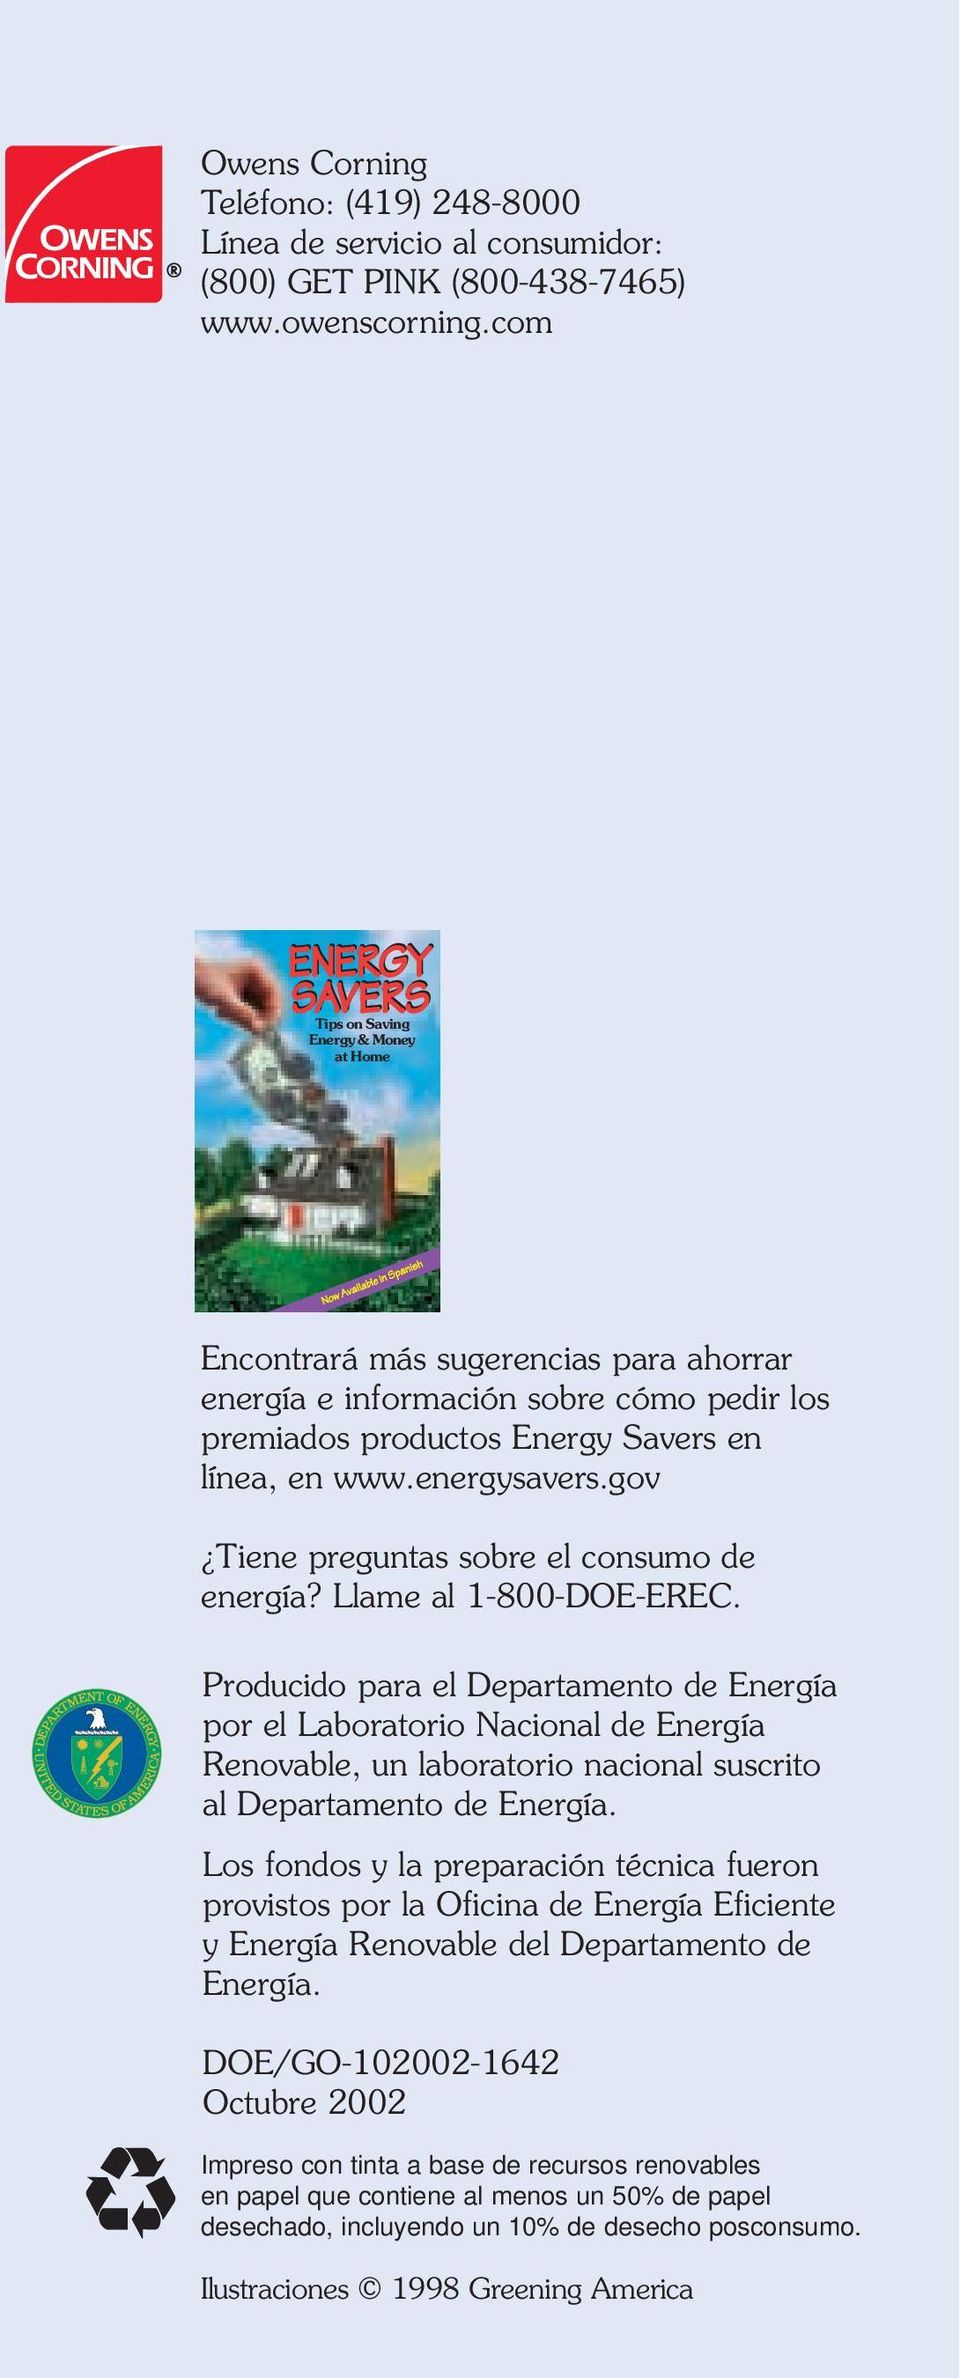 www.energysavers.gov Tiene preguntas sobre el consumo de energía? Llame al 1-800-DOE-EREC.